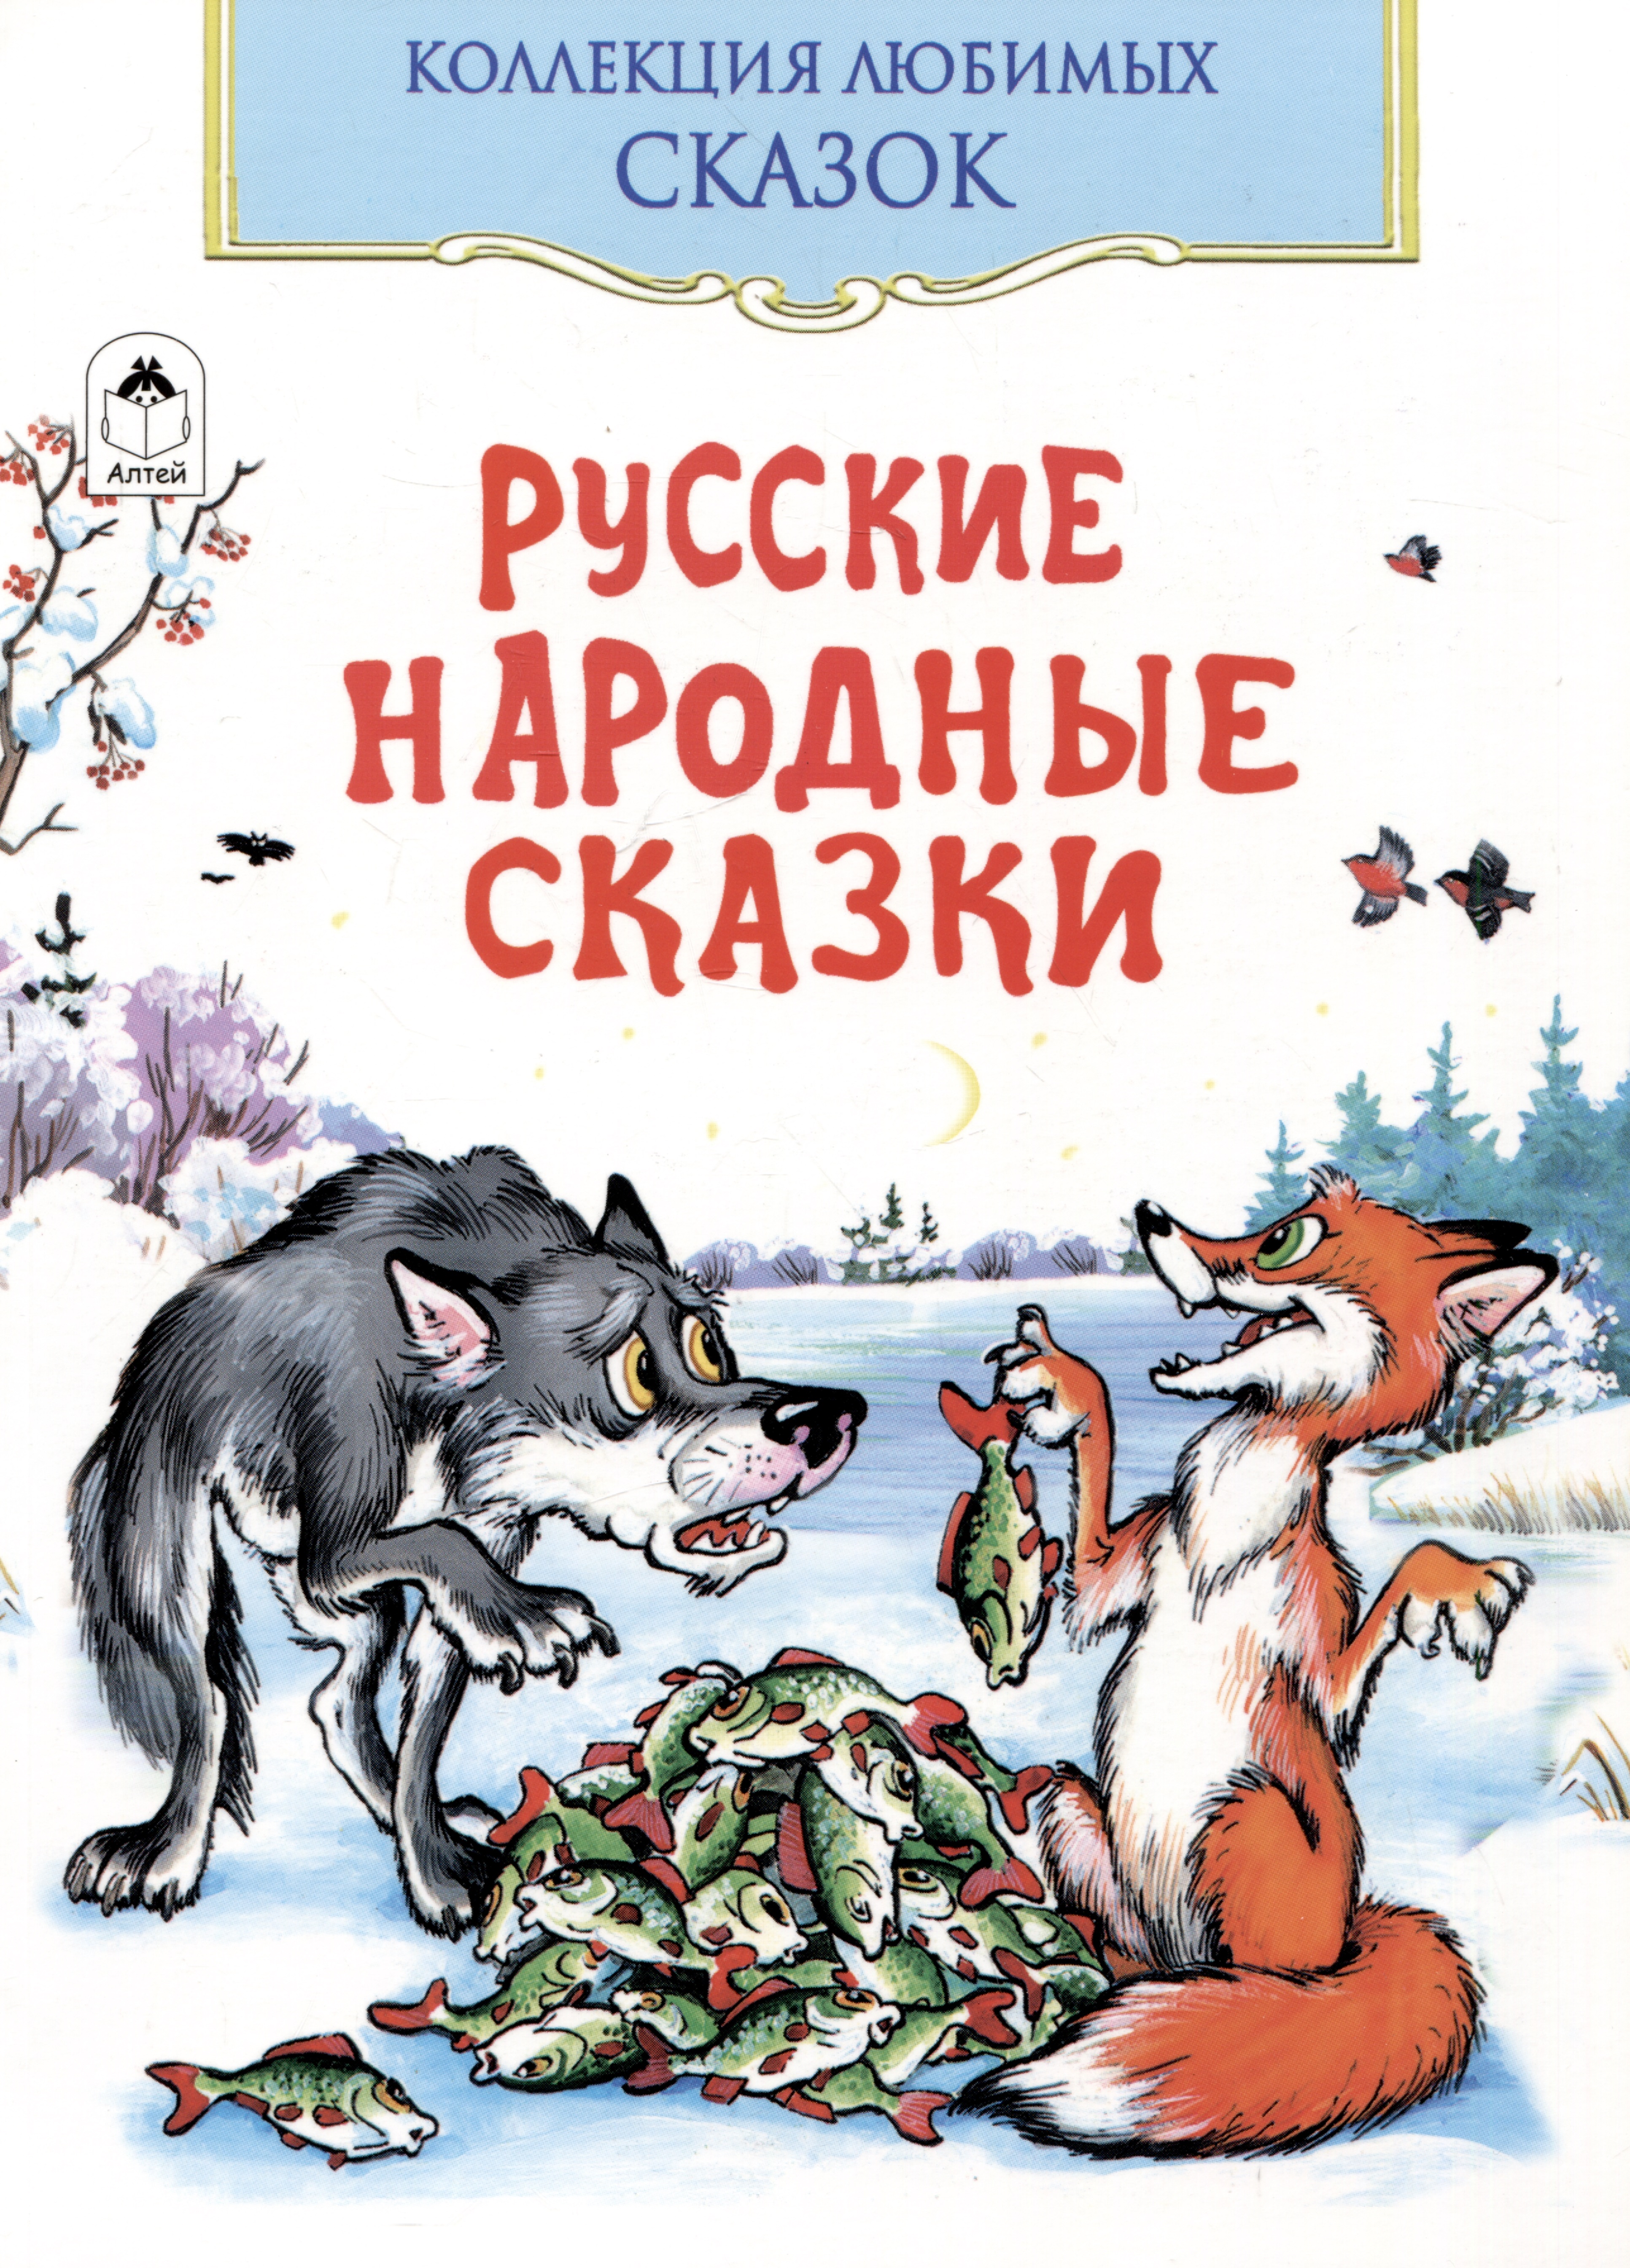 Русские народные сказки художественные книги росмэн большая книга русские народные сказки